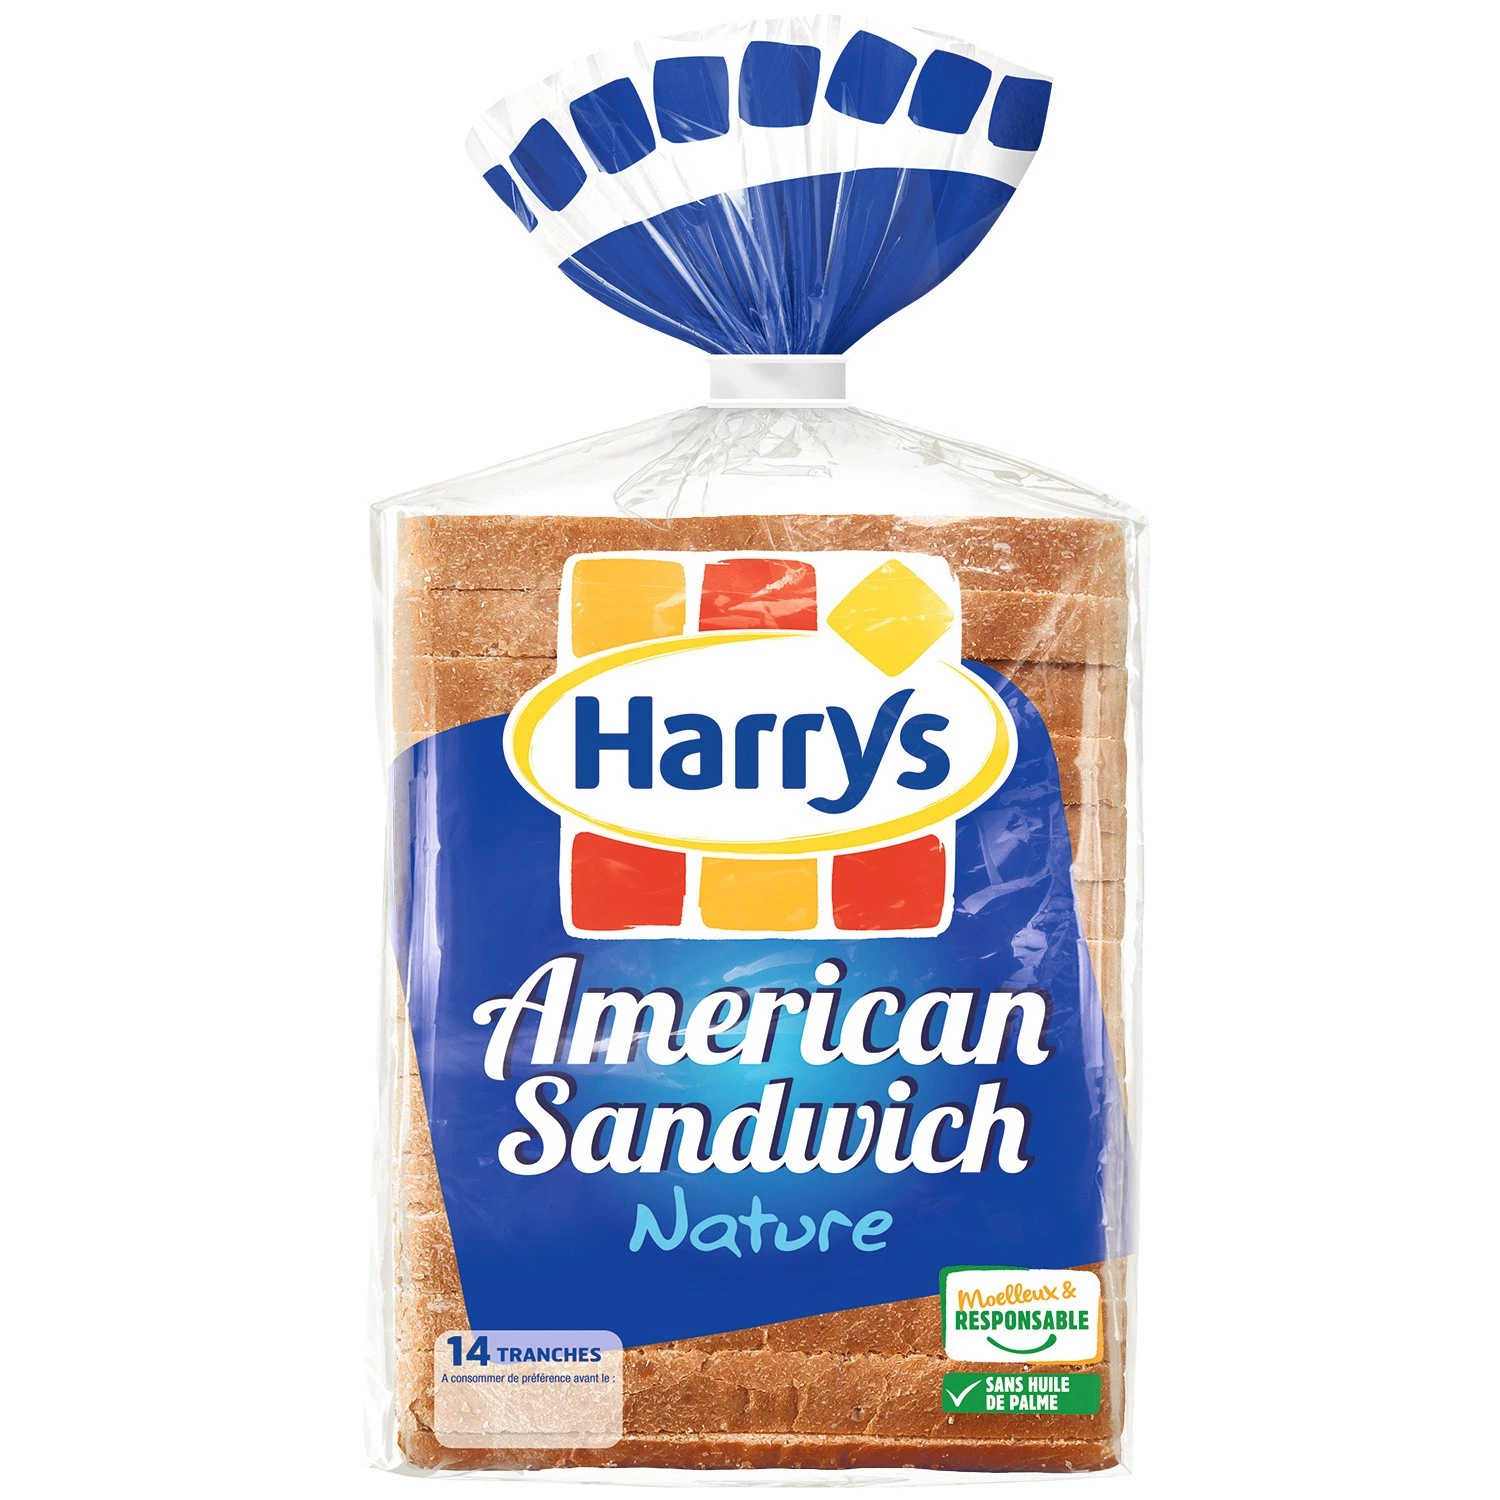 Pain de mie nature amerikaanse sandwich x14 550g - HARRY'S